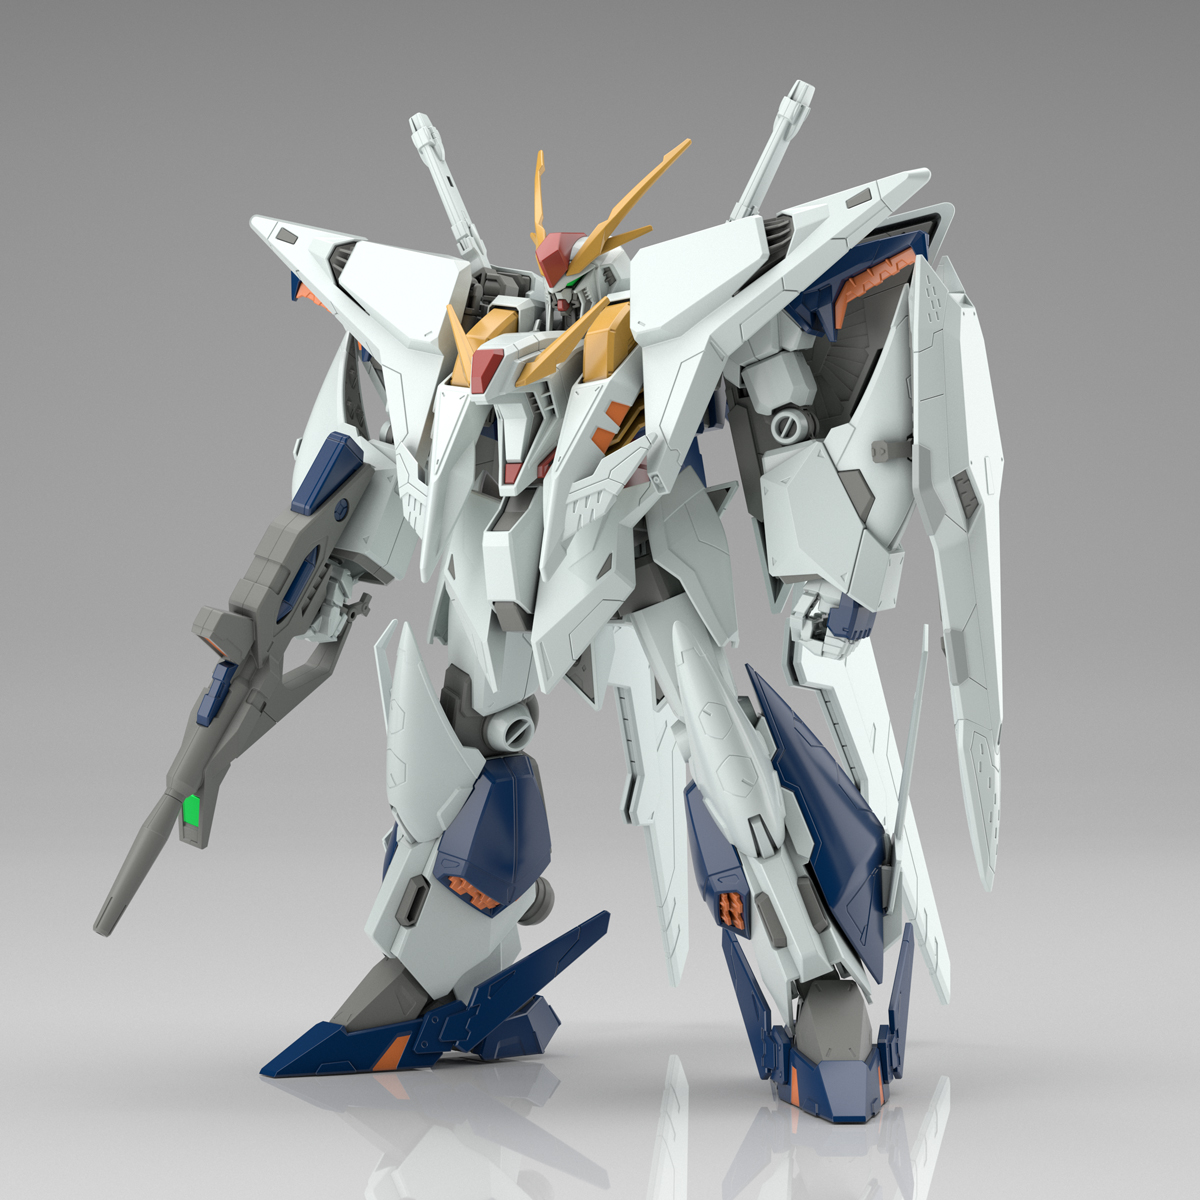 RX-105 Ξガンダム〈クスィーガンダム〉 [Ξ Gundam]（小説版）